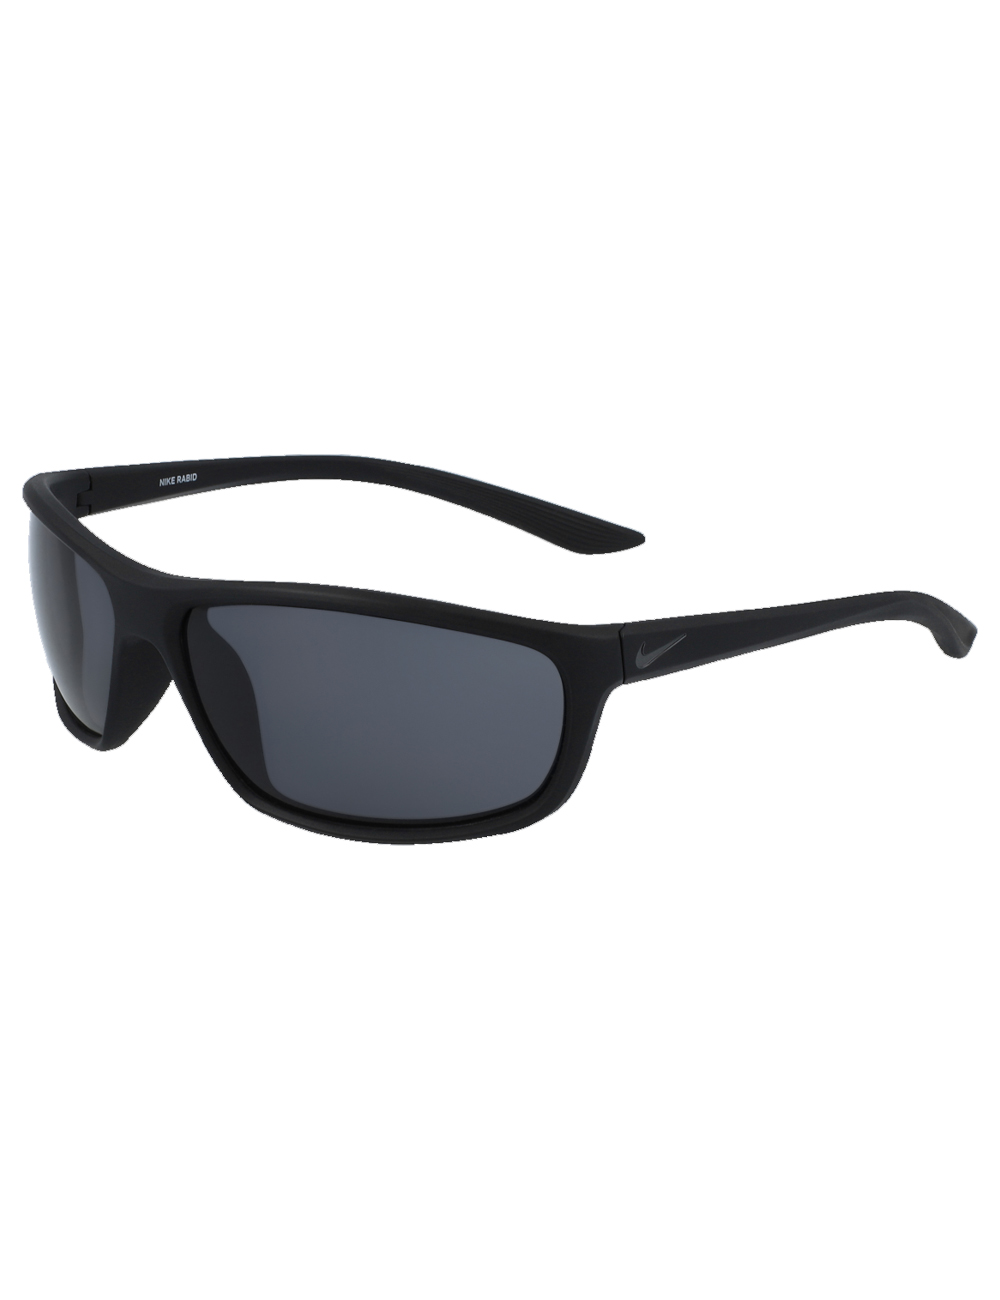 фото Солнцезащитные очки мужские nike ev1109 черные/серые